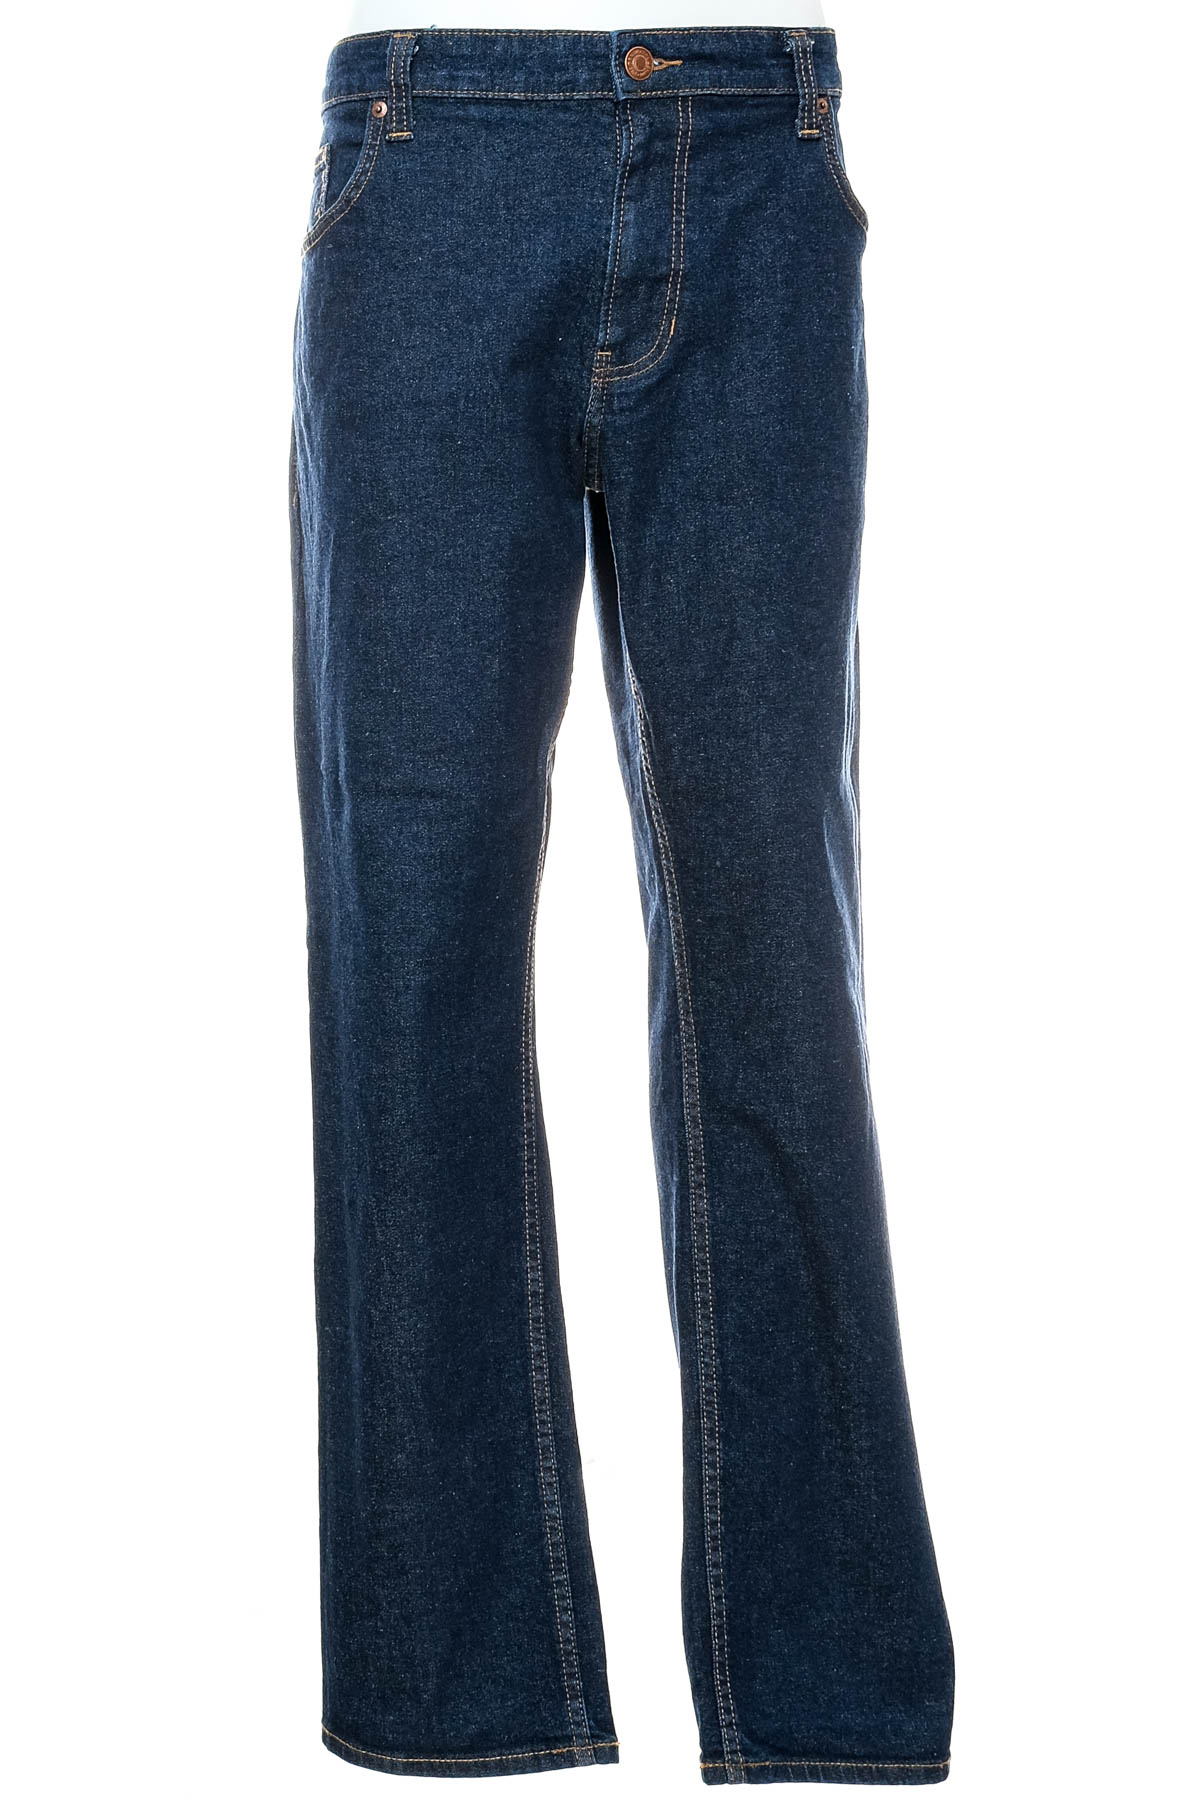 Men's jeans - C&A - 0